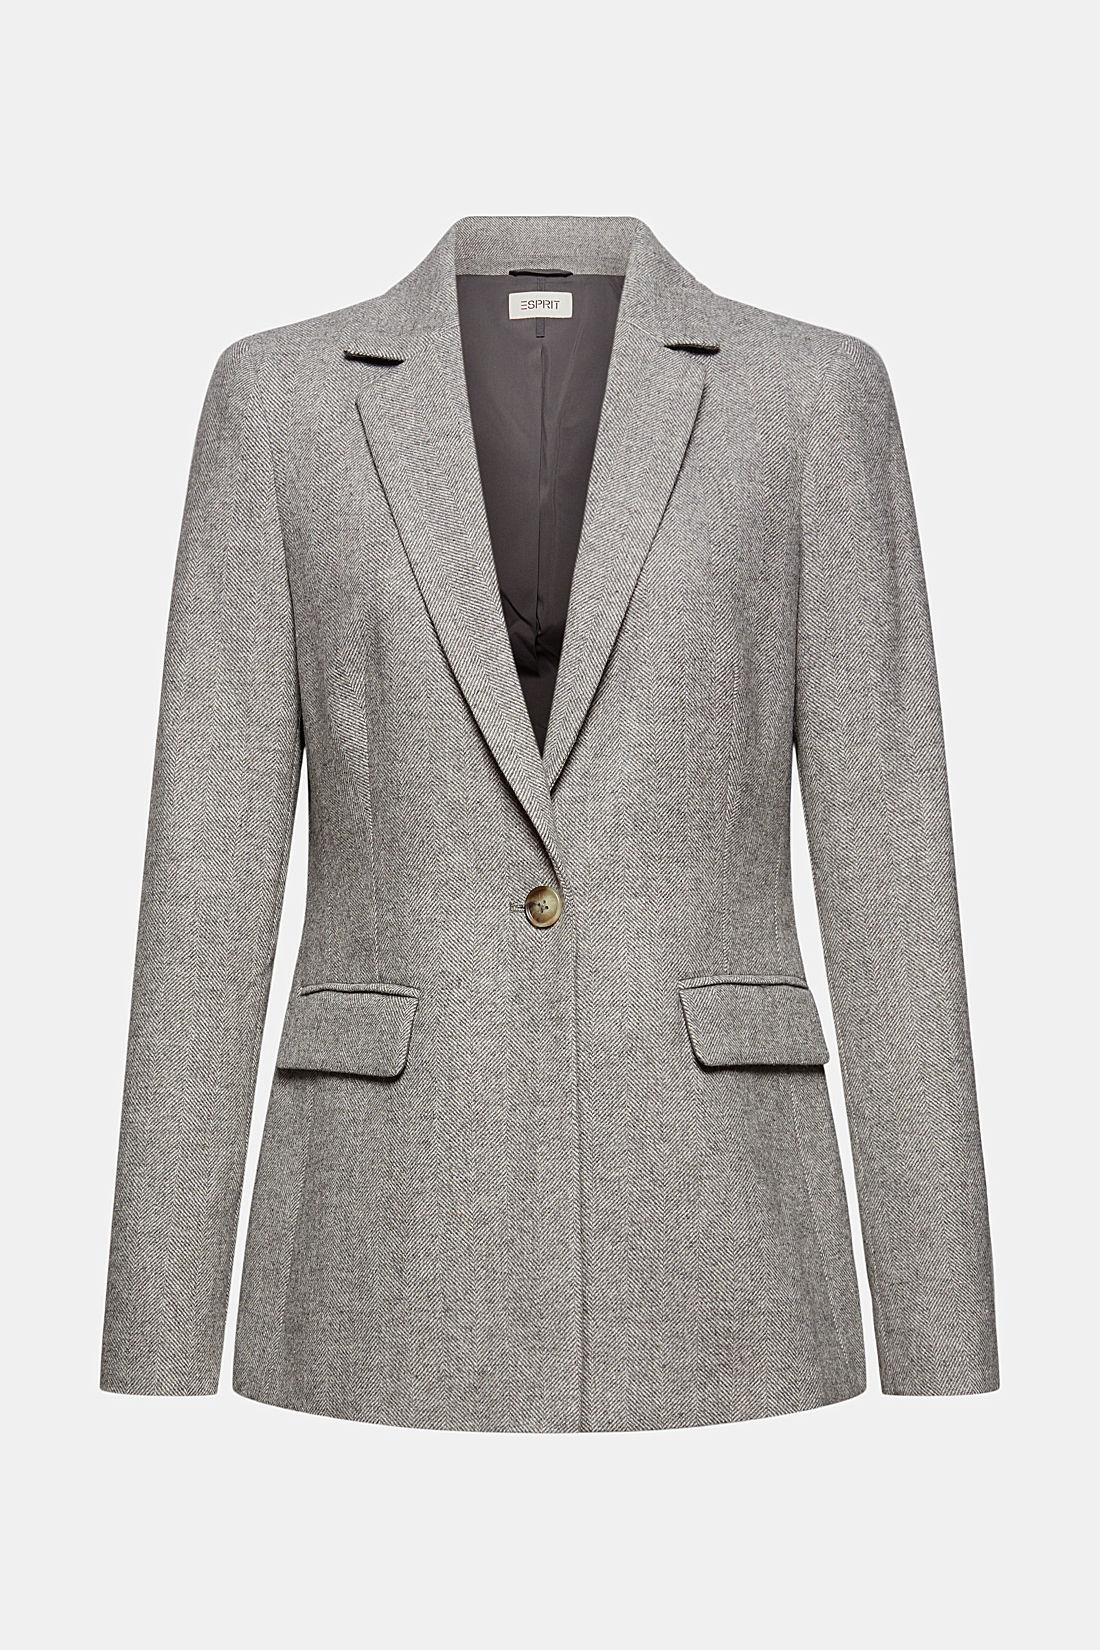 Esprit Tweed blazer grijs gestippeld zakelijke stijl Mode Blazers Tweed blazers 